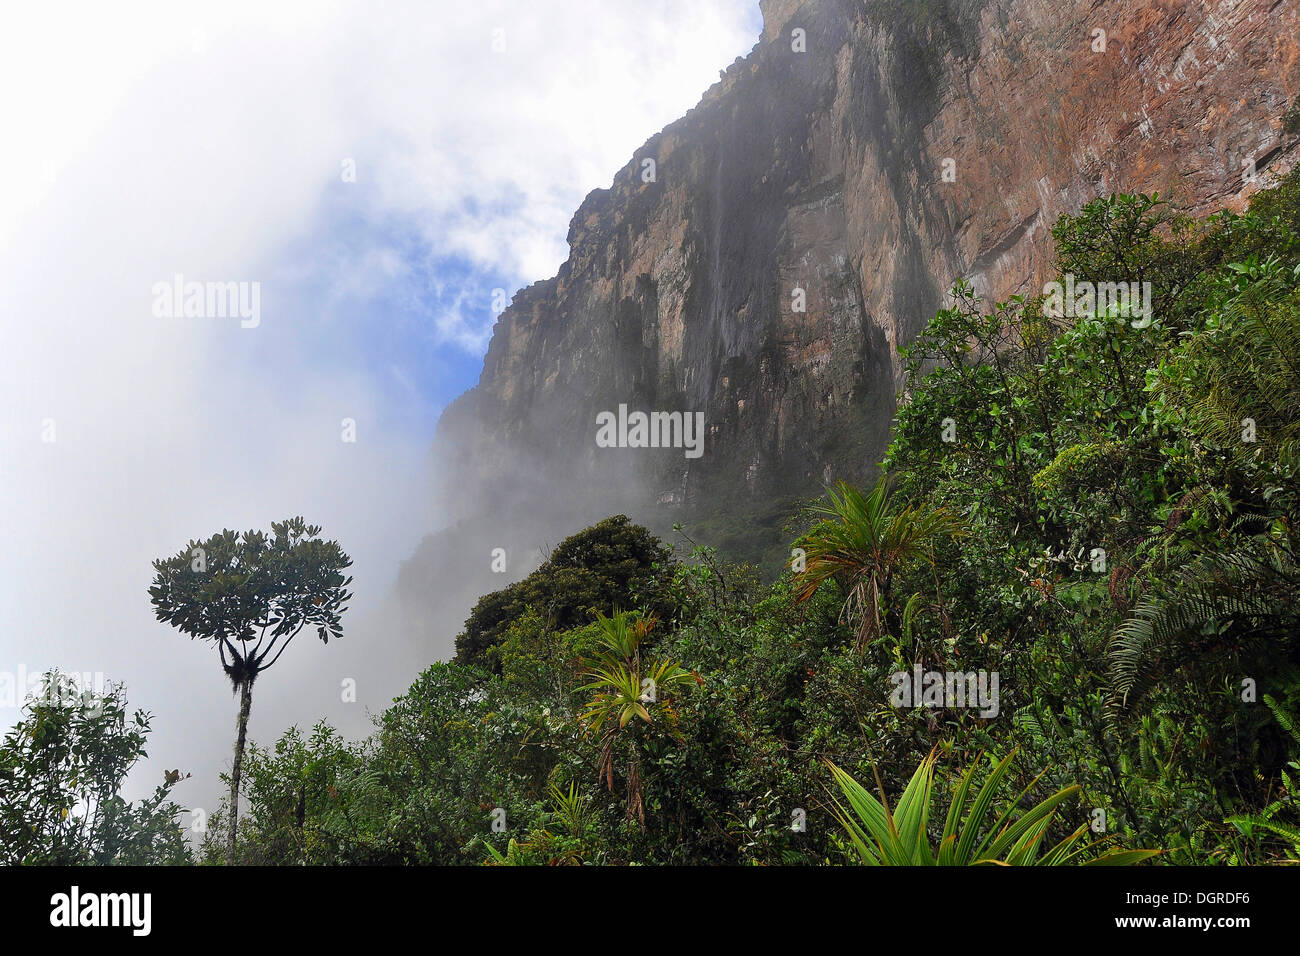 Visage d'escarpe de Roraima Table Mountain, dans la brume, triangle des frontières du Brésil, du Venezuela et du Guyana, en Amérique du Sud Banque D'Images